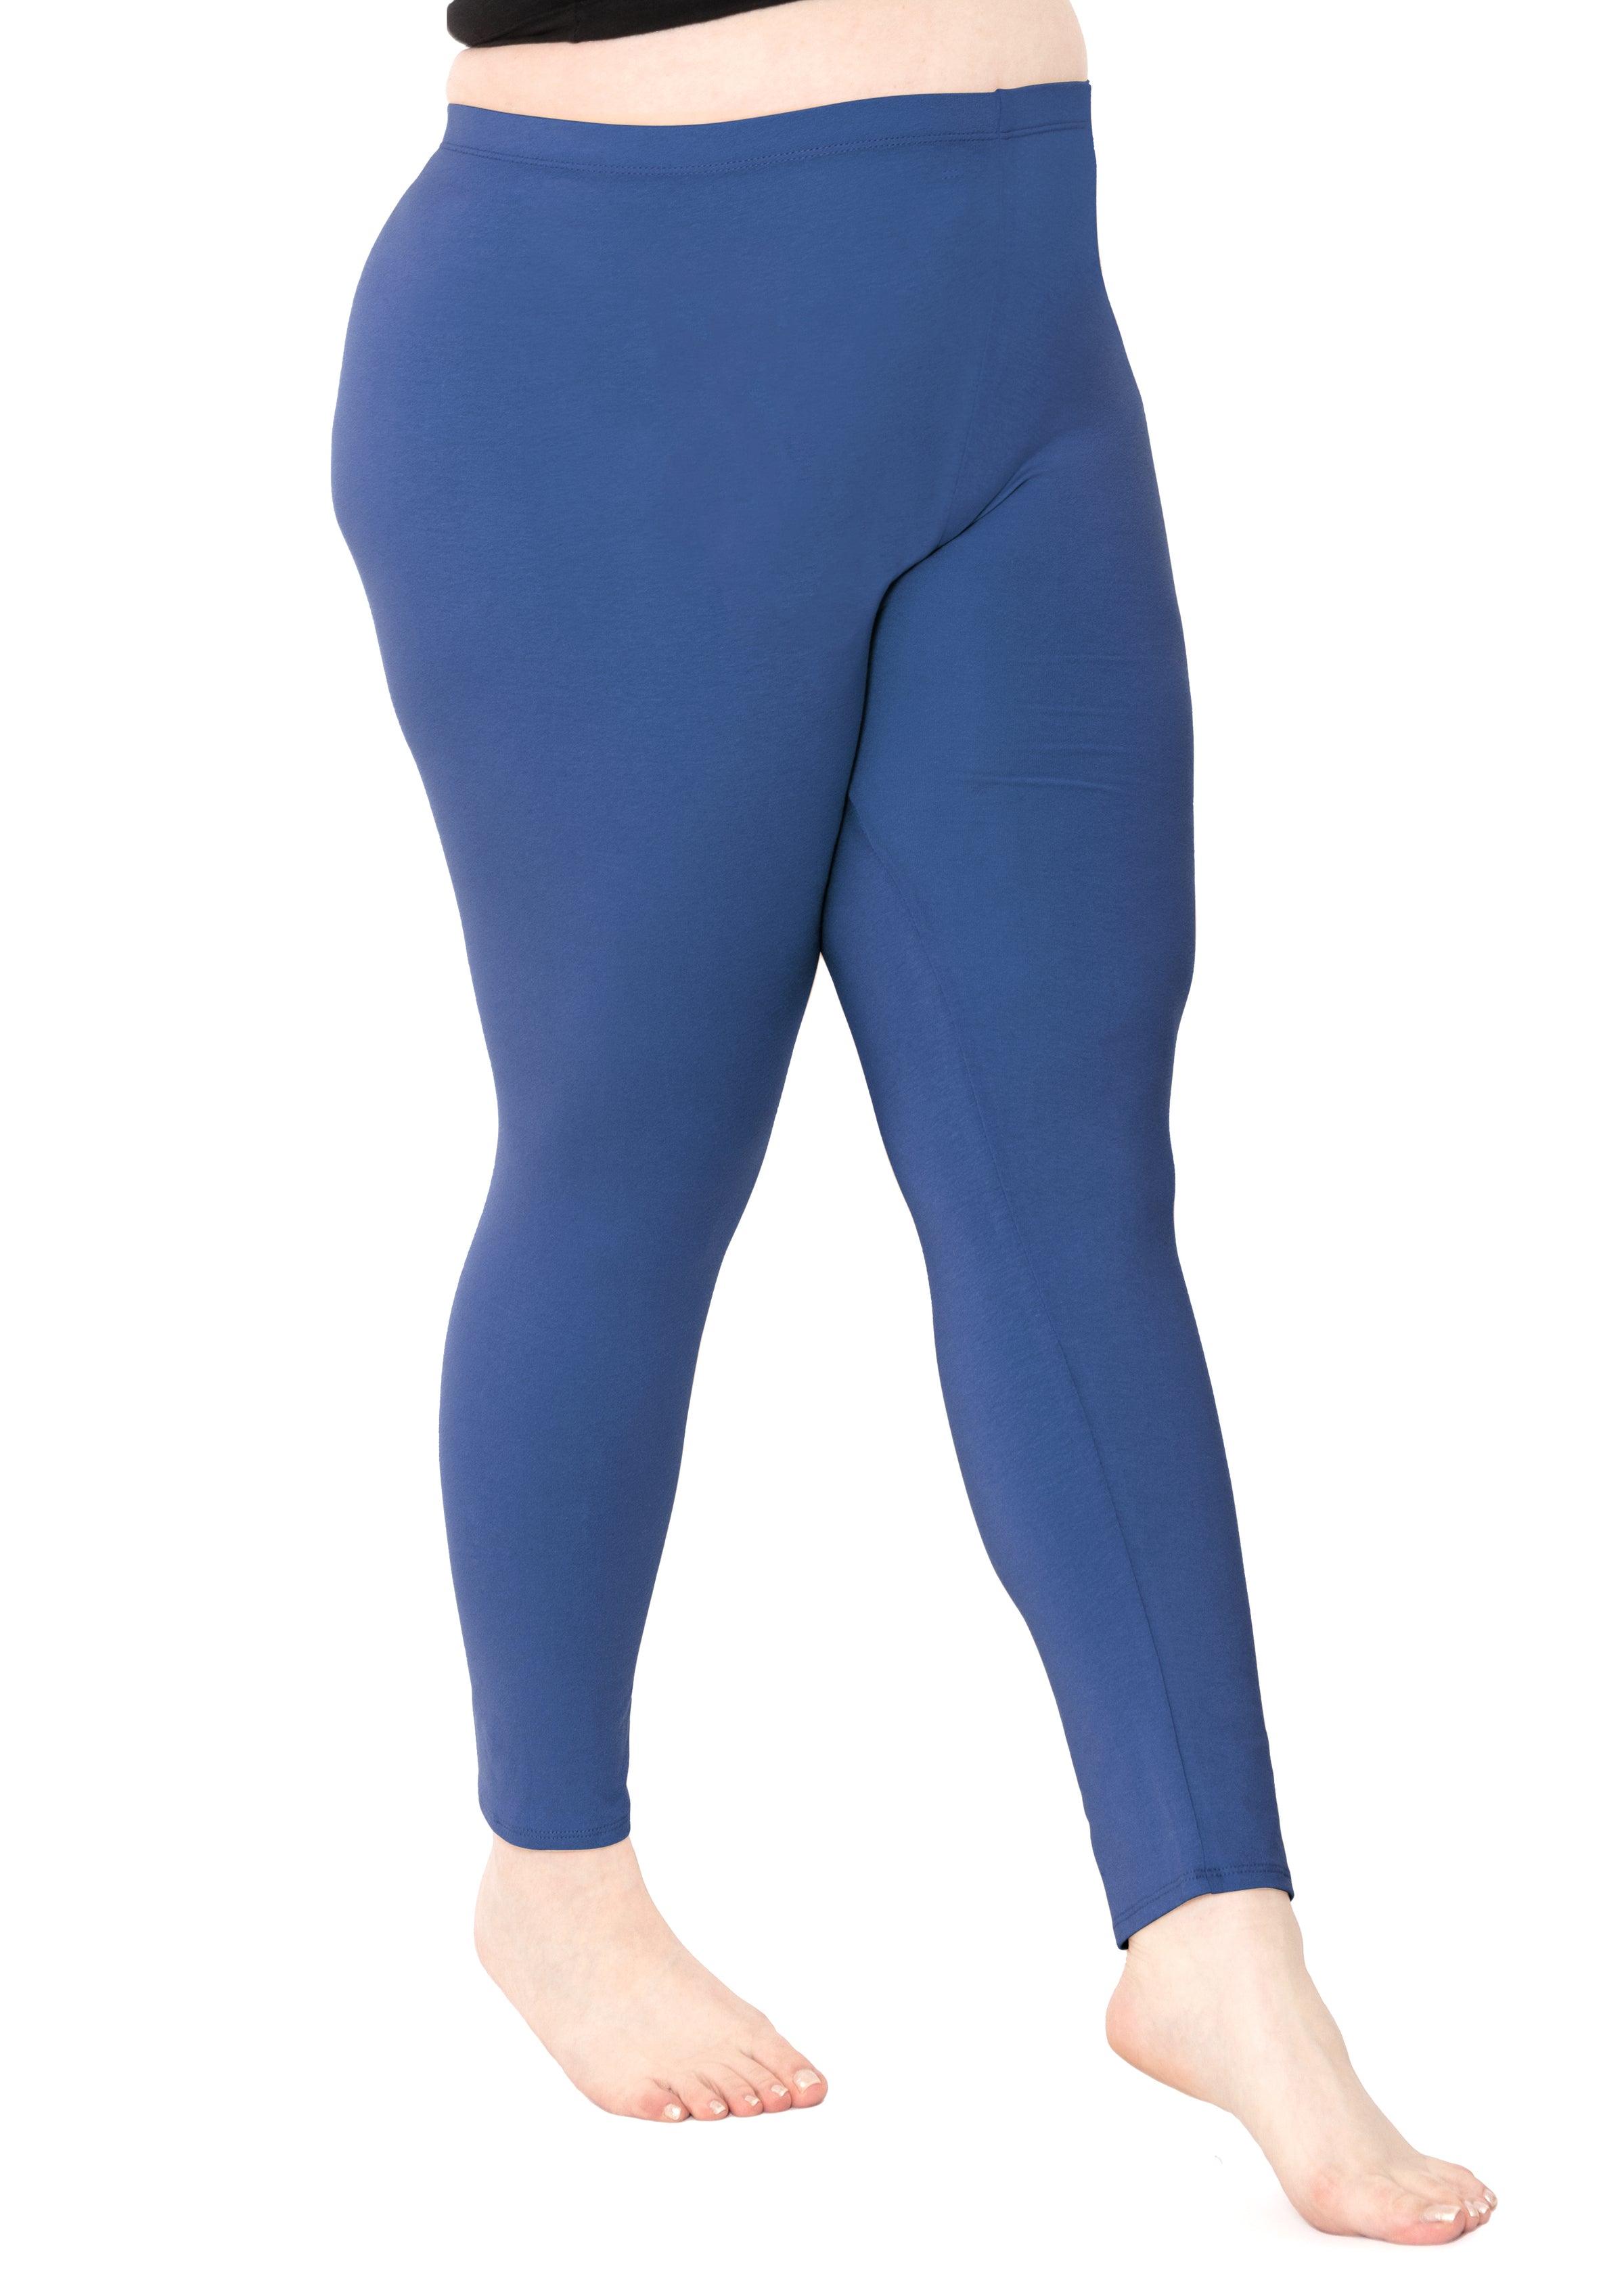 Sofra Women's Plus Sized Full Length Leggings-Navy Blue at